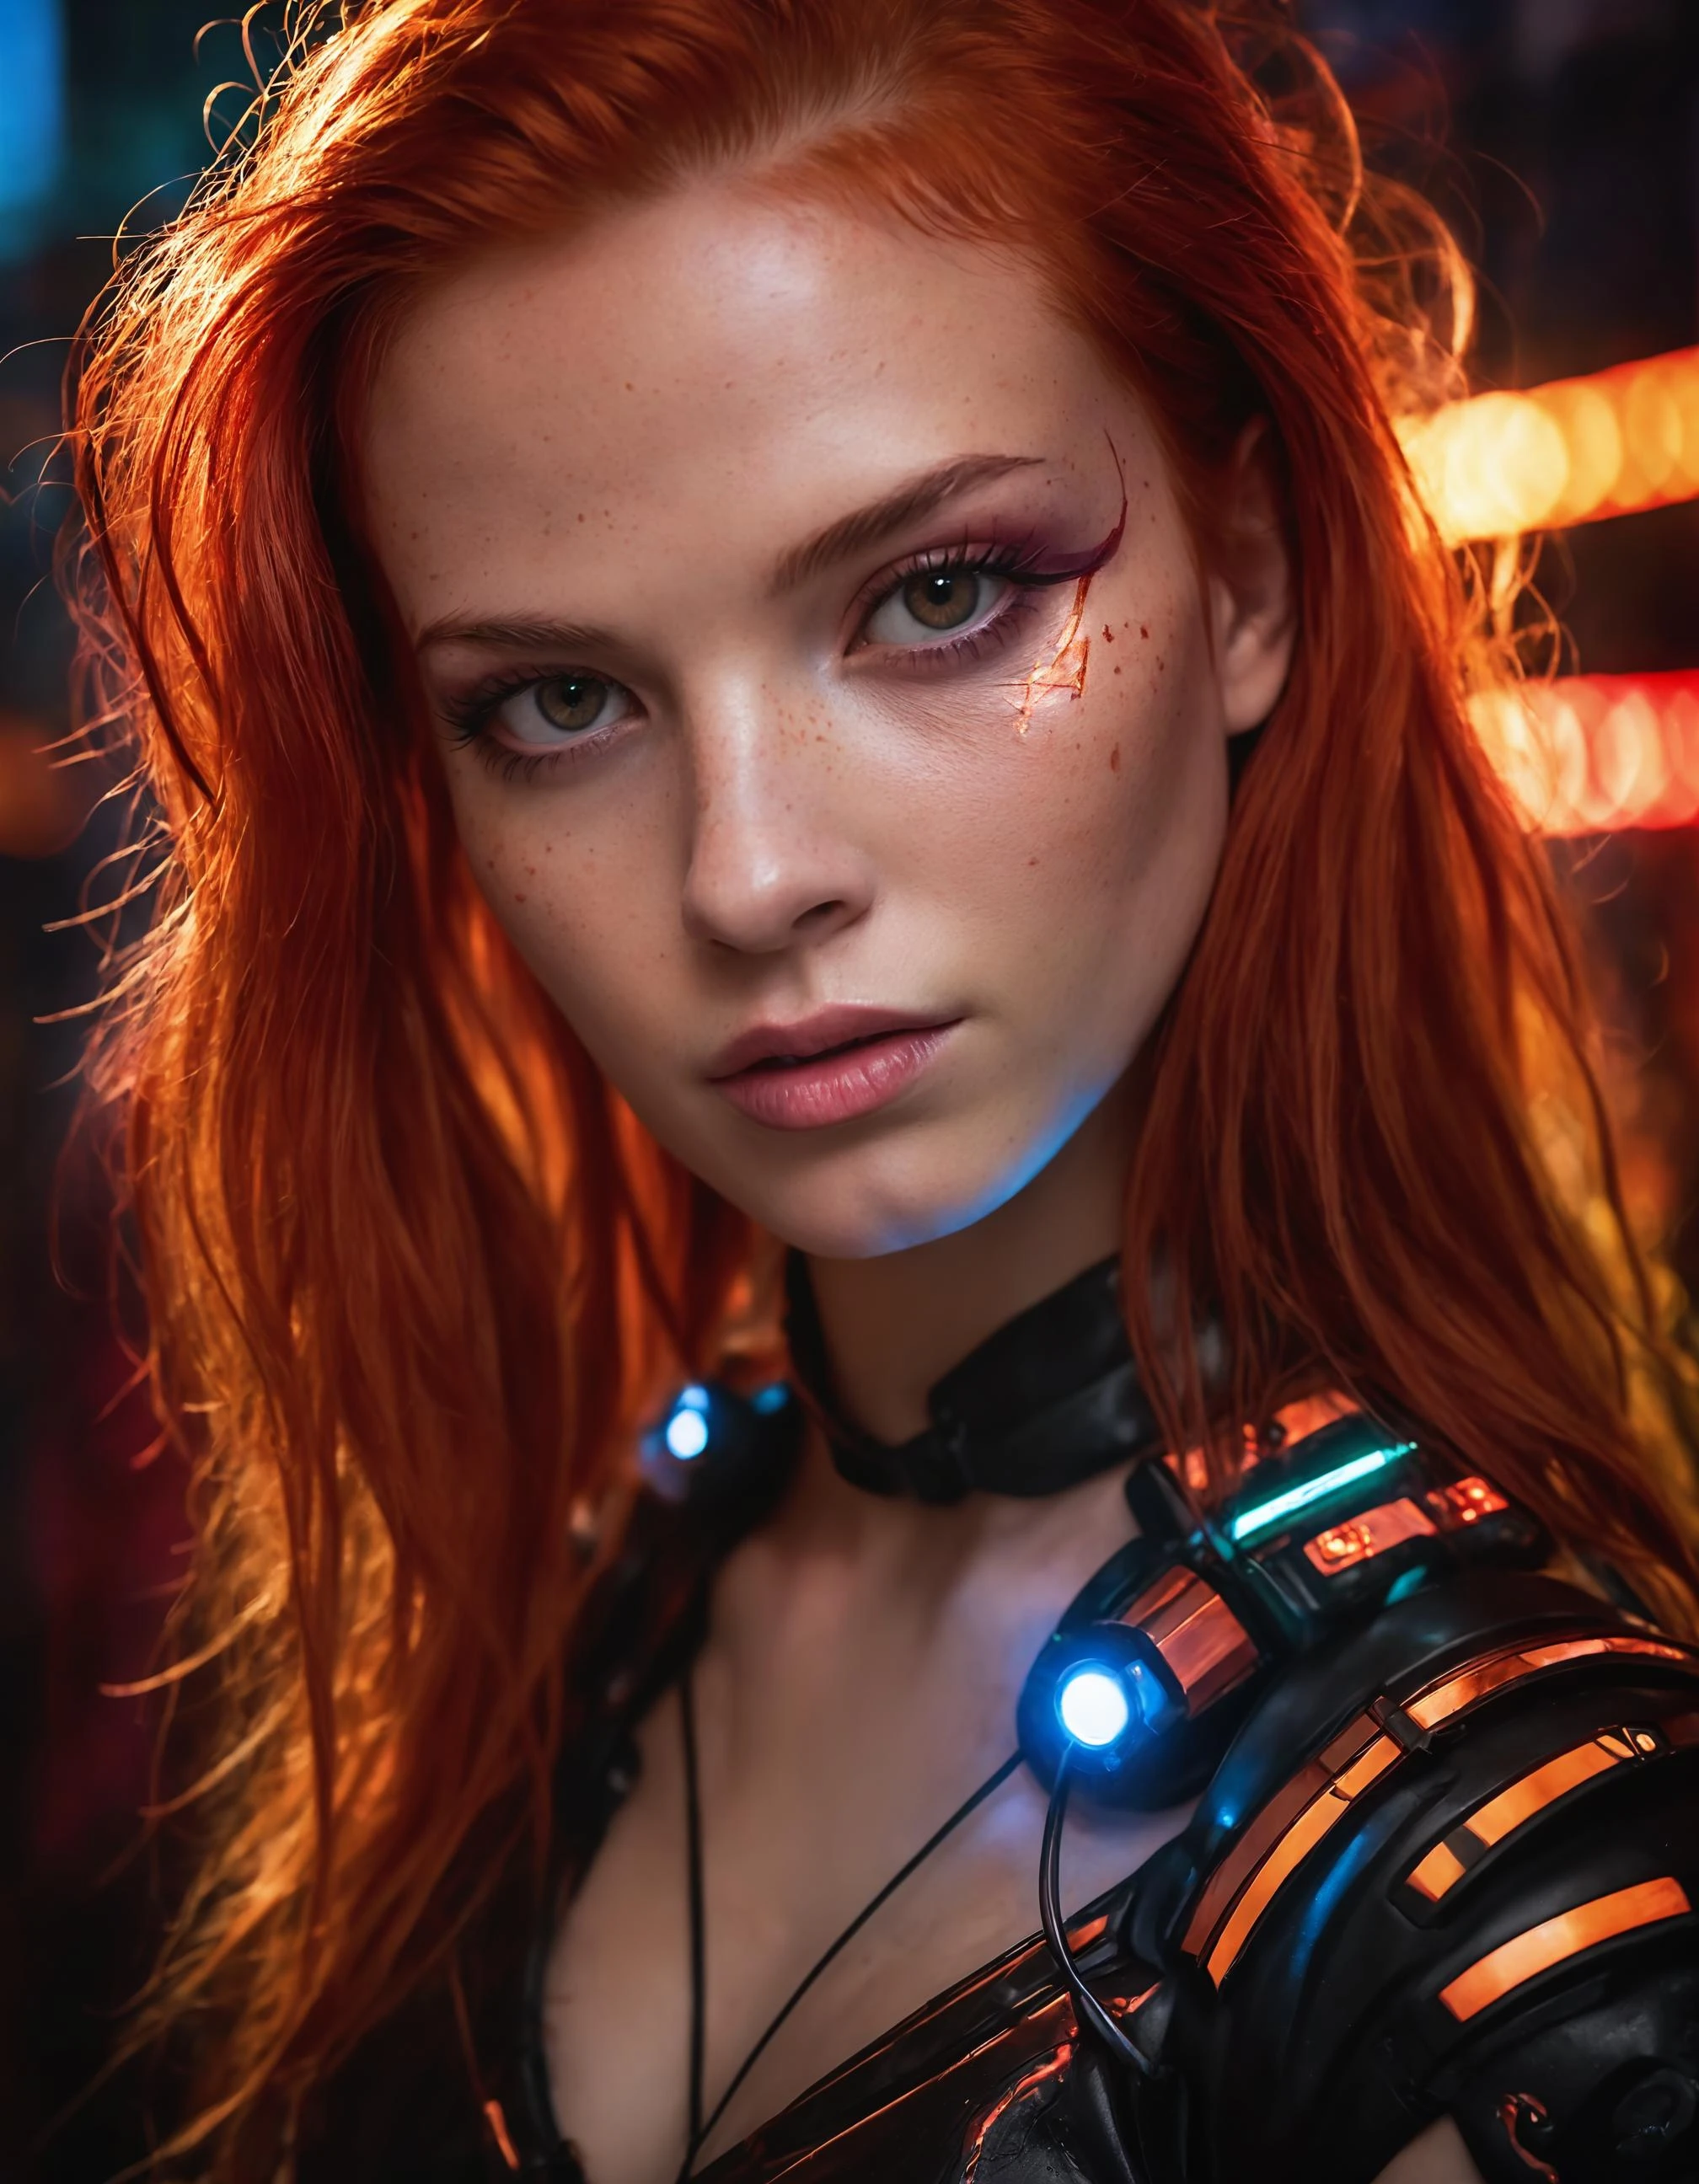 Ein Foto, das das Wesen einer jungen Cyborg-Frau mit feuerrotem Haar einfängt. Ihr Gesicht füllt den Rahmen, in Neonfarben getaucht, strahlt Entschlossenheit und Mysterium vor einer futuristischen Kulisse aus., nicht definiert